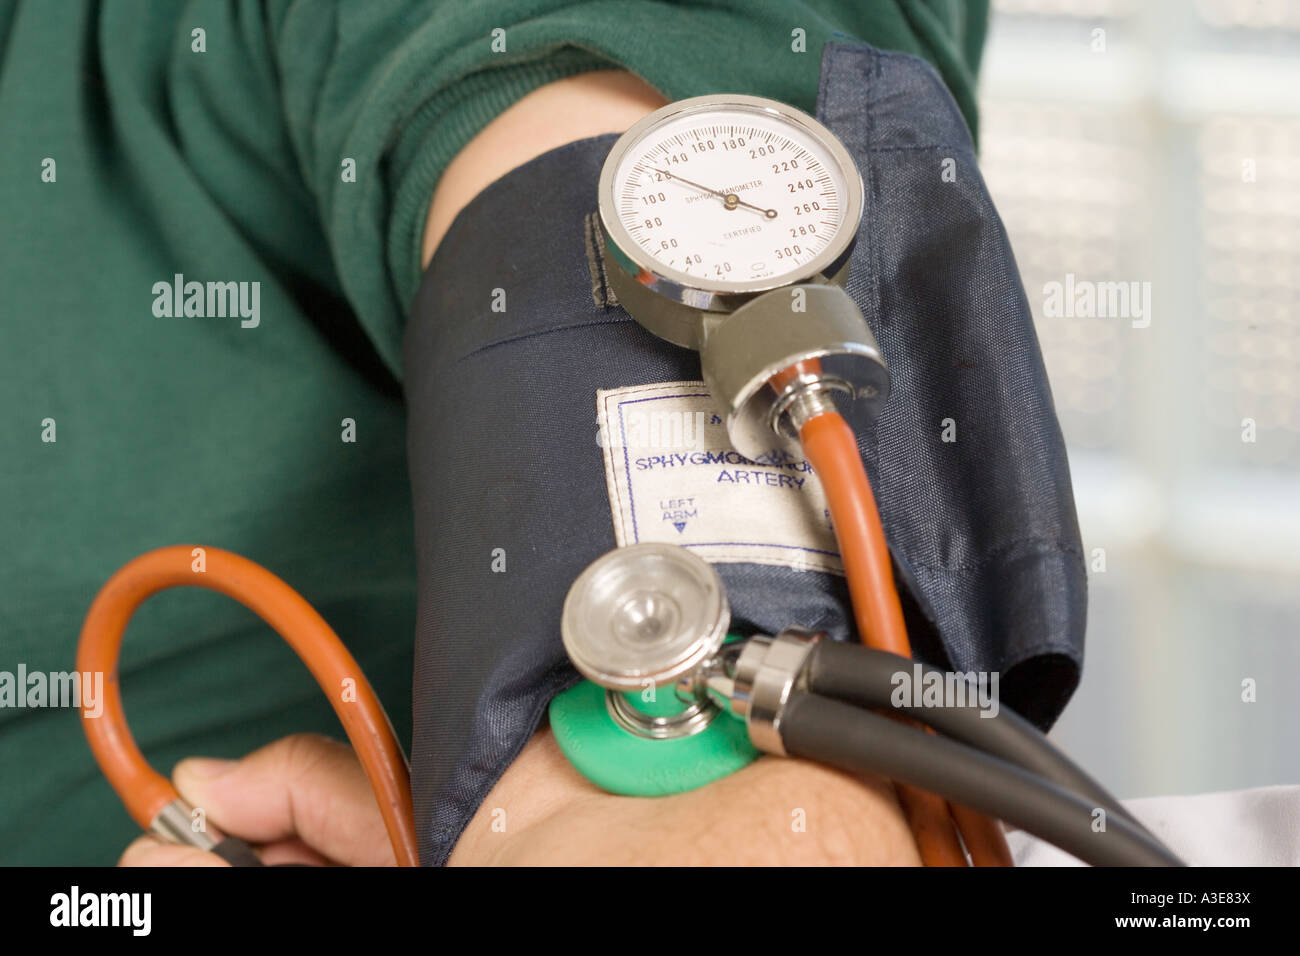 Blutdruck zu wählen (Sphygmometer) auf Patienten Manschette bei einer Blutdruck-Untersuchung. Stockfoto